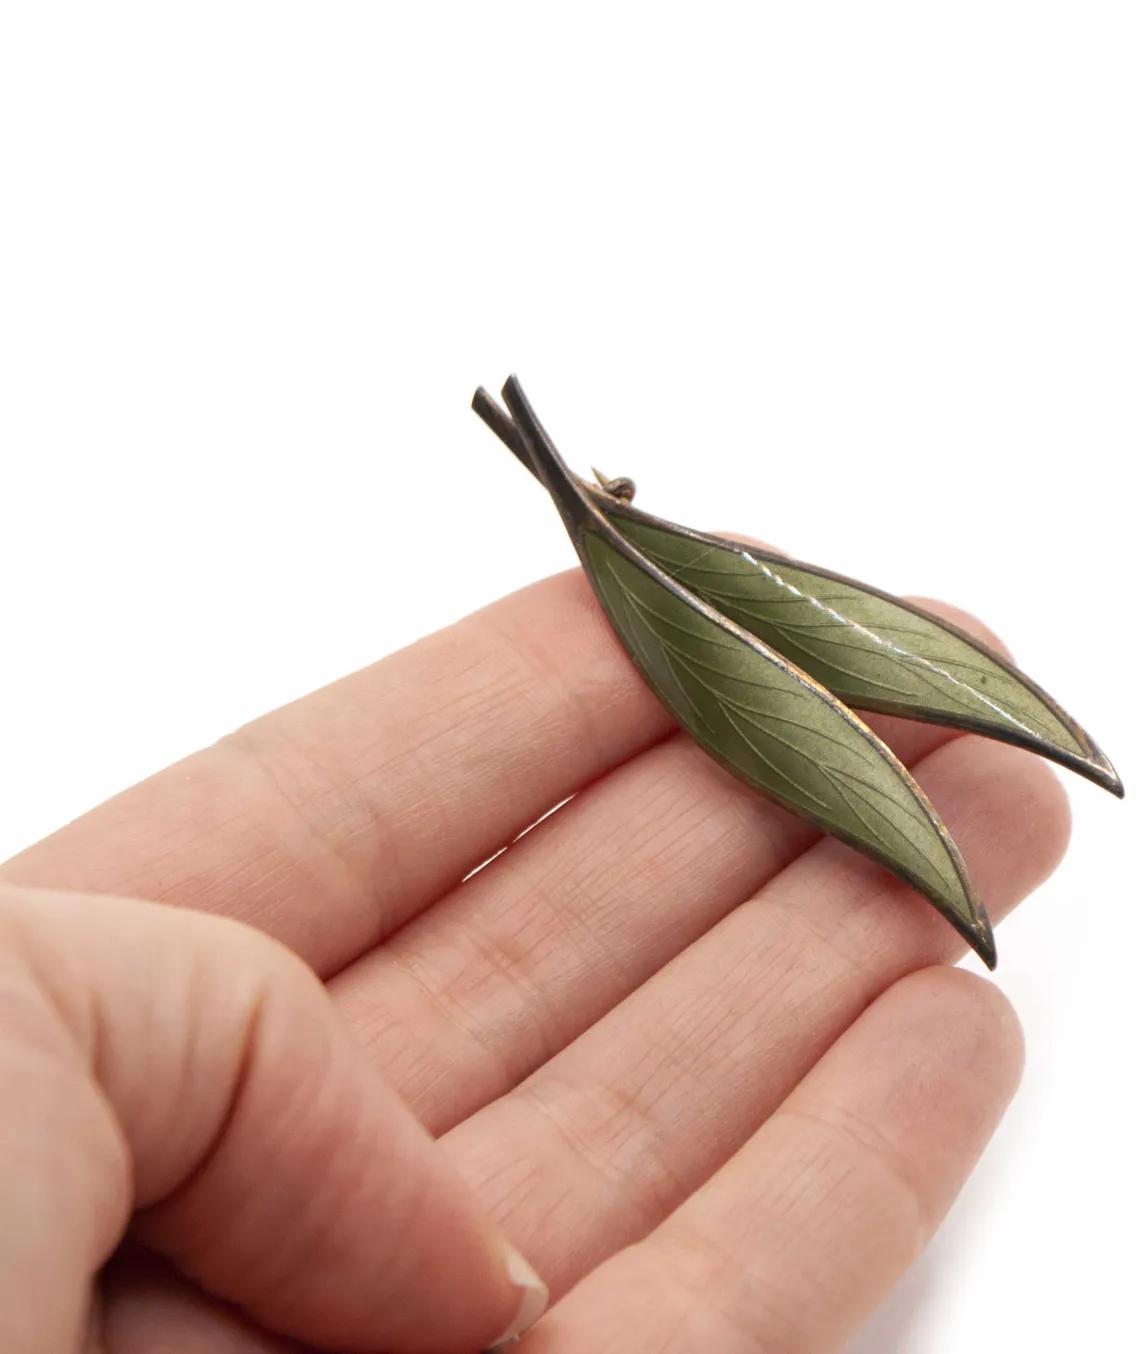 Double green enamel leaf brooch held in hand